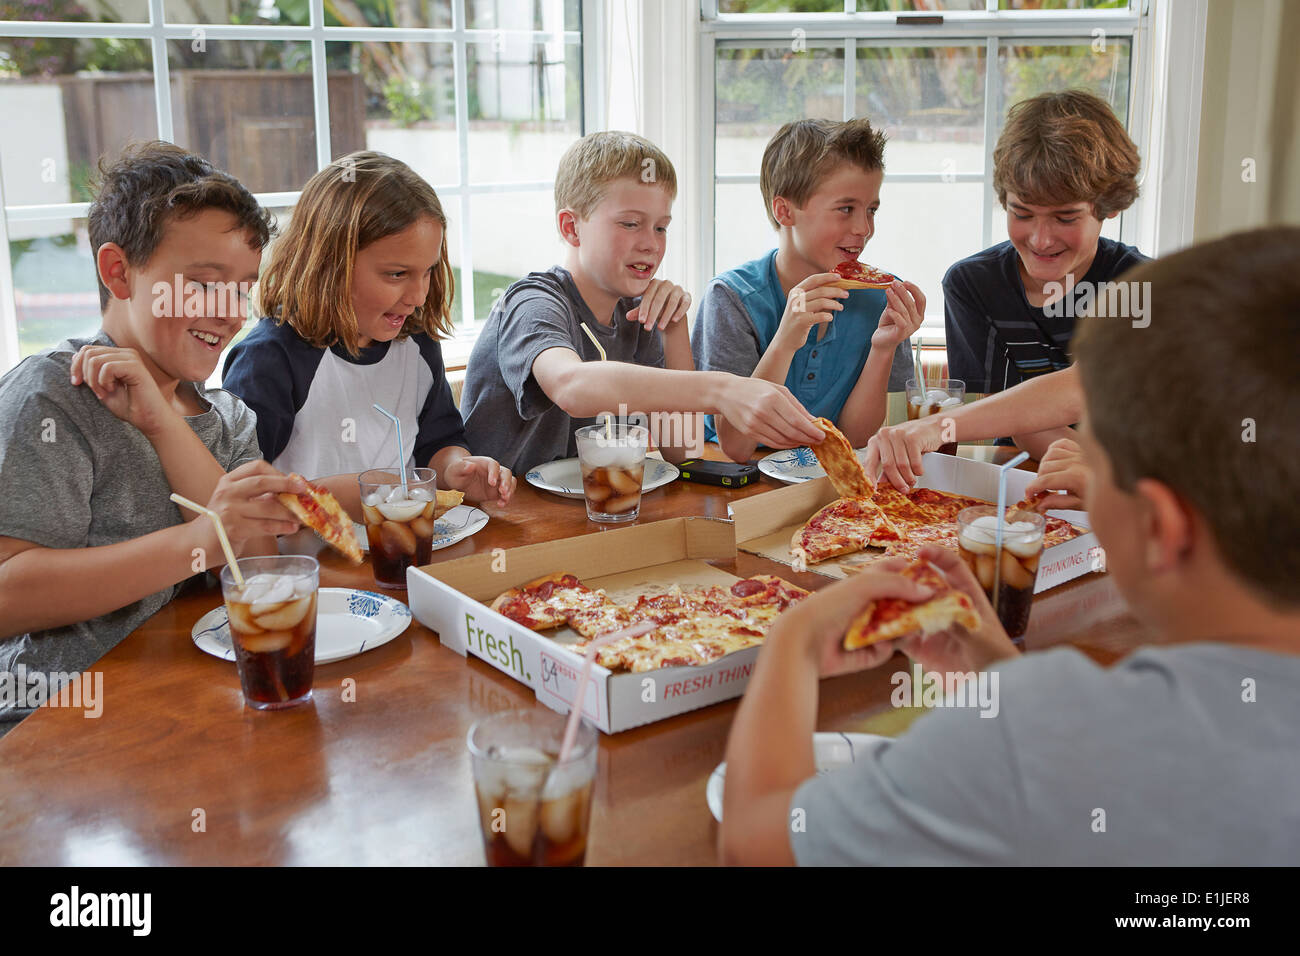 Gruppe von jungen teilen pizza Stockfoto